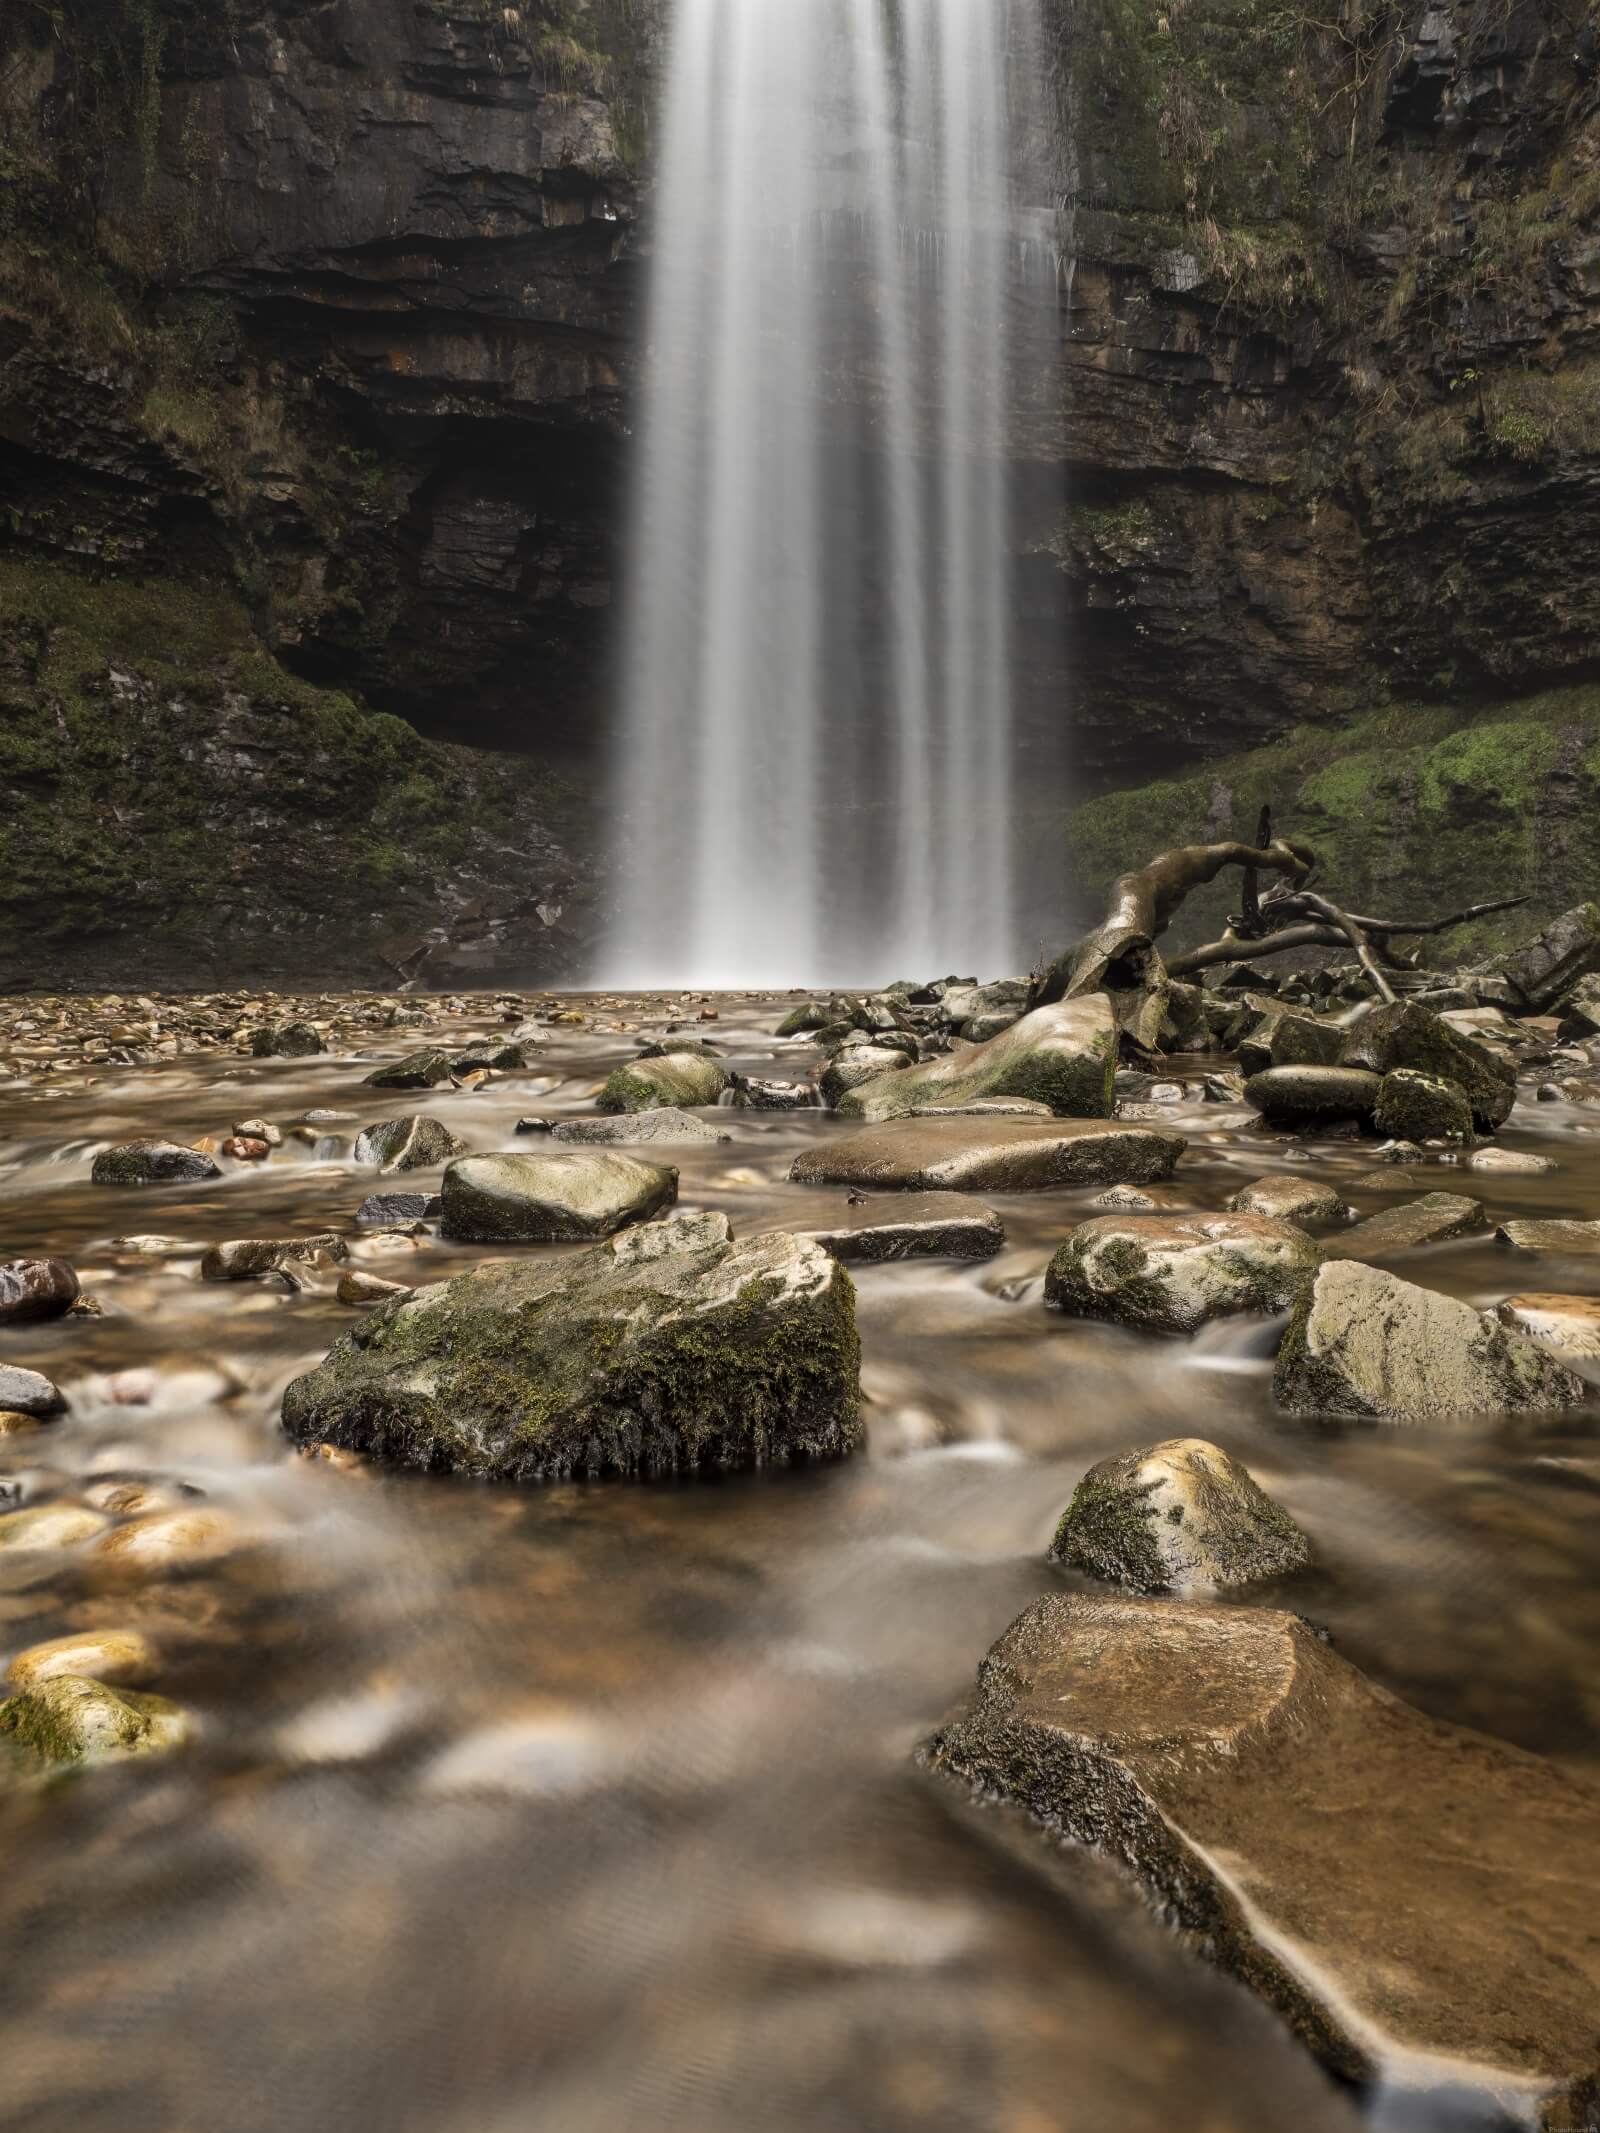 Image of Henrhyd Falls by Matt Holland